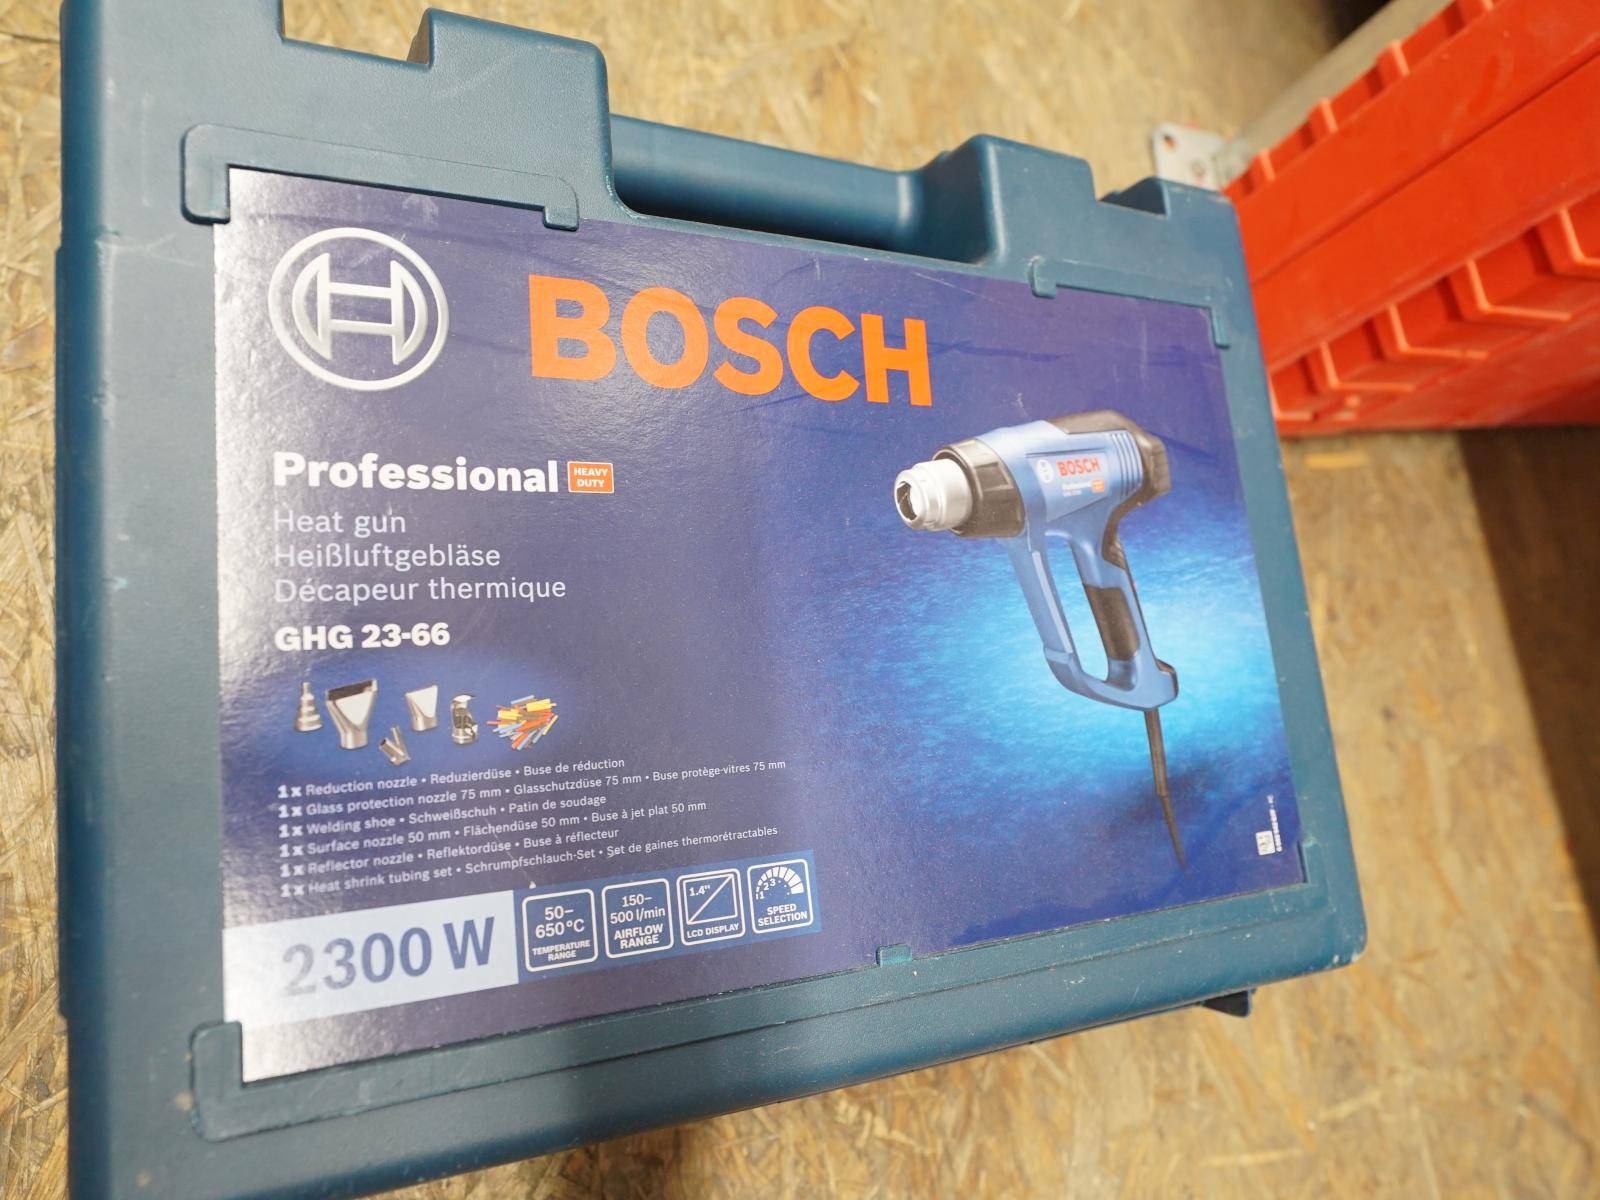 GST 23-66 90 - 20.2.24 E BOSCH tool + Power GHG Auction